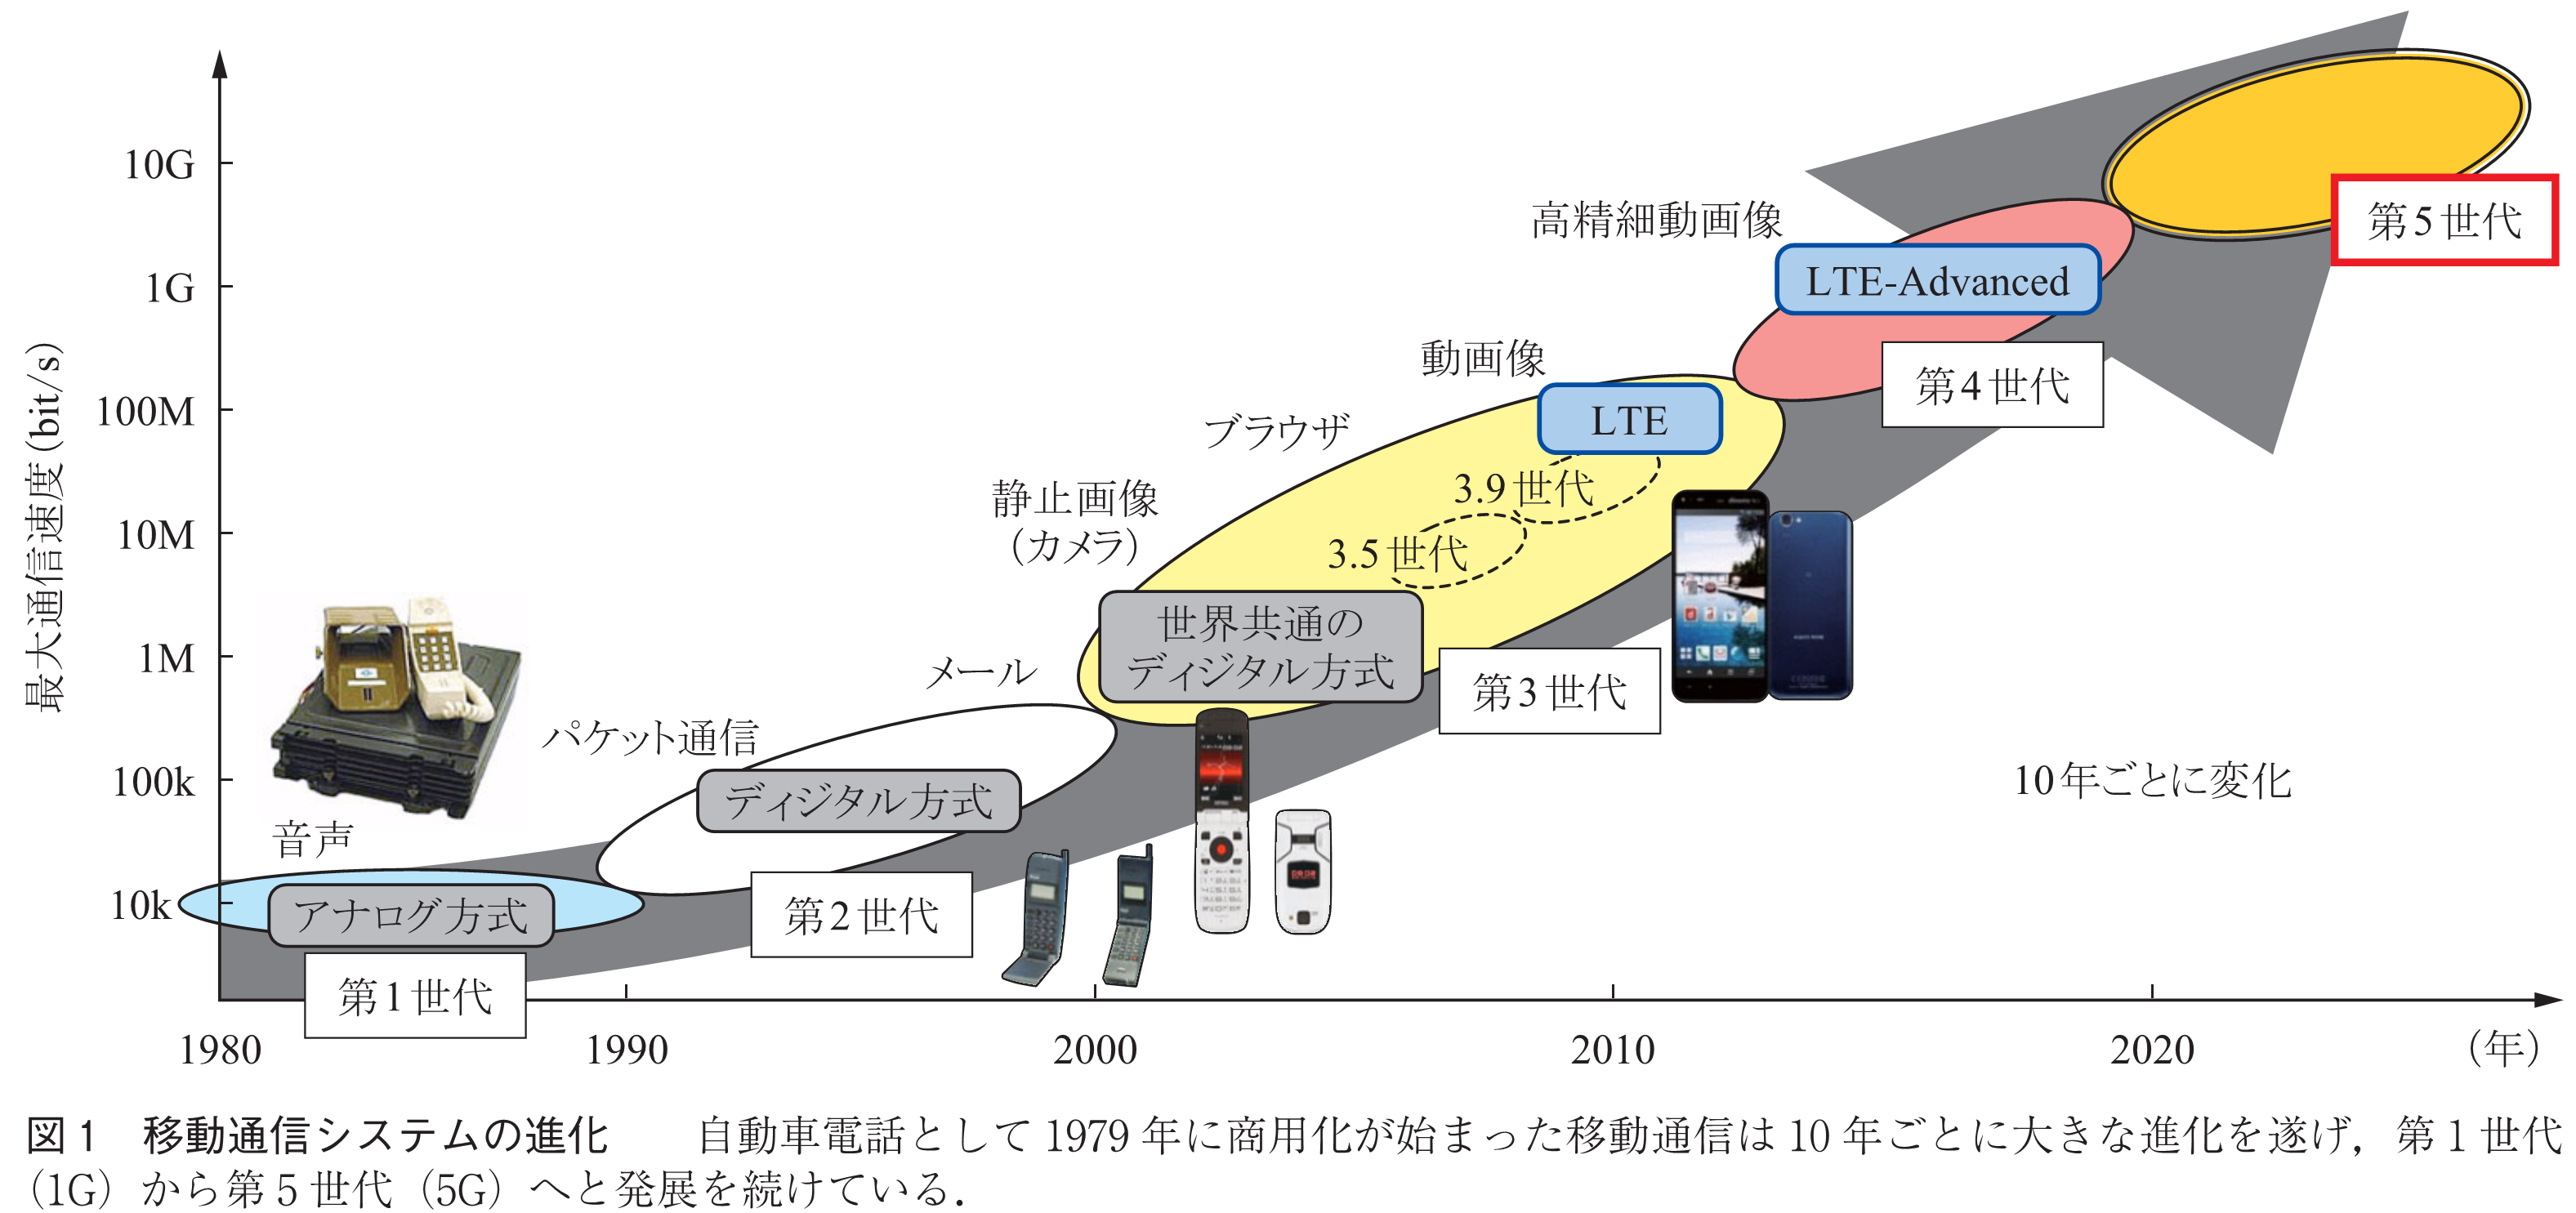 図1 移動通信システムの進化